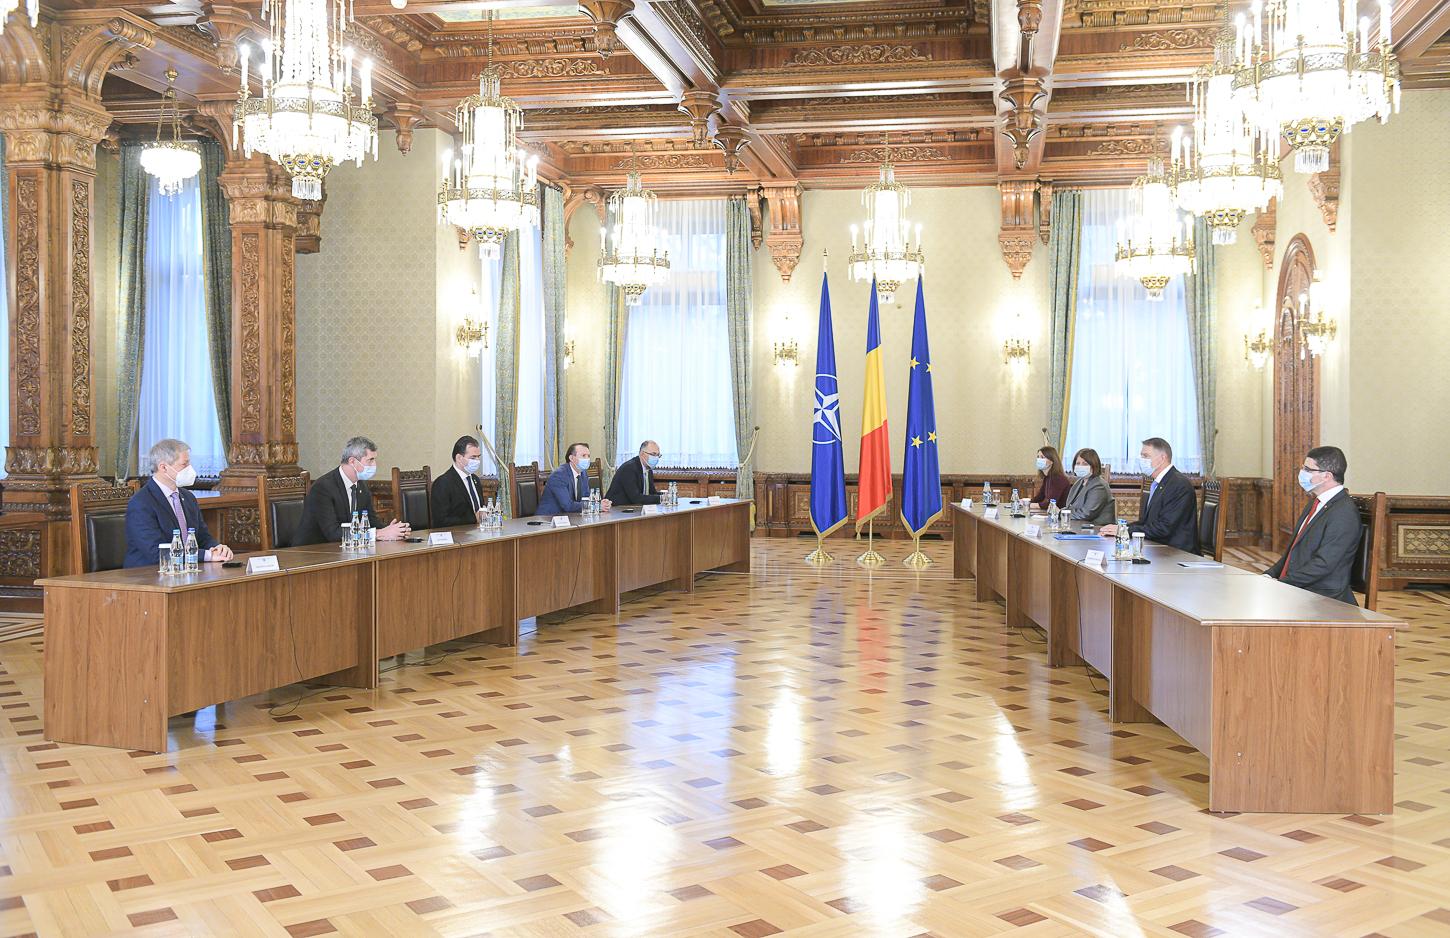 Klaus Iohannis a felicitat coaliţia de guvernare pentru că a ajuns la un acord